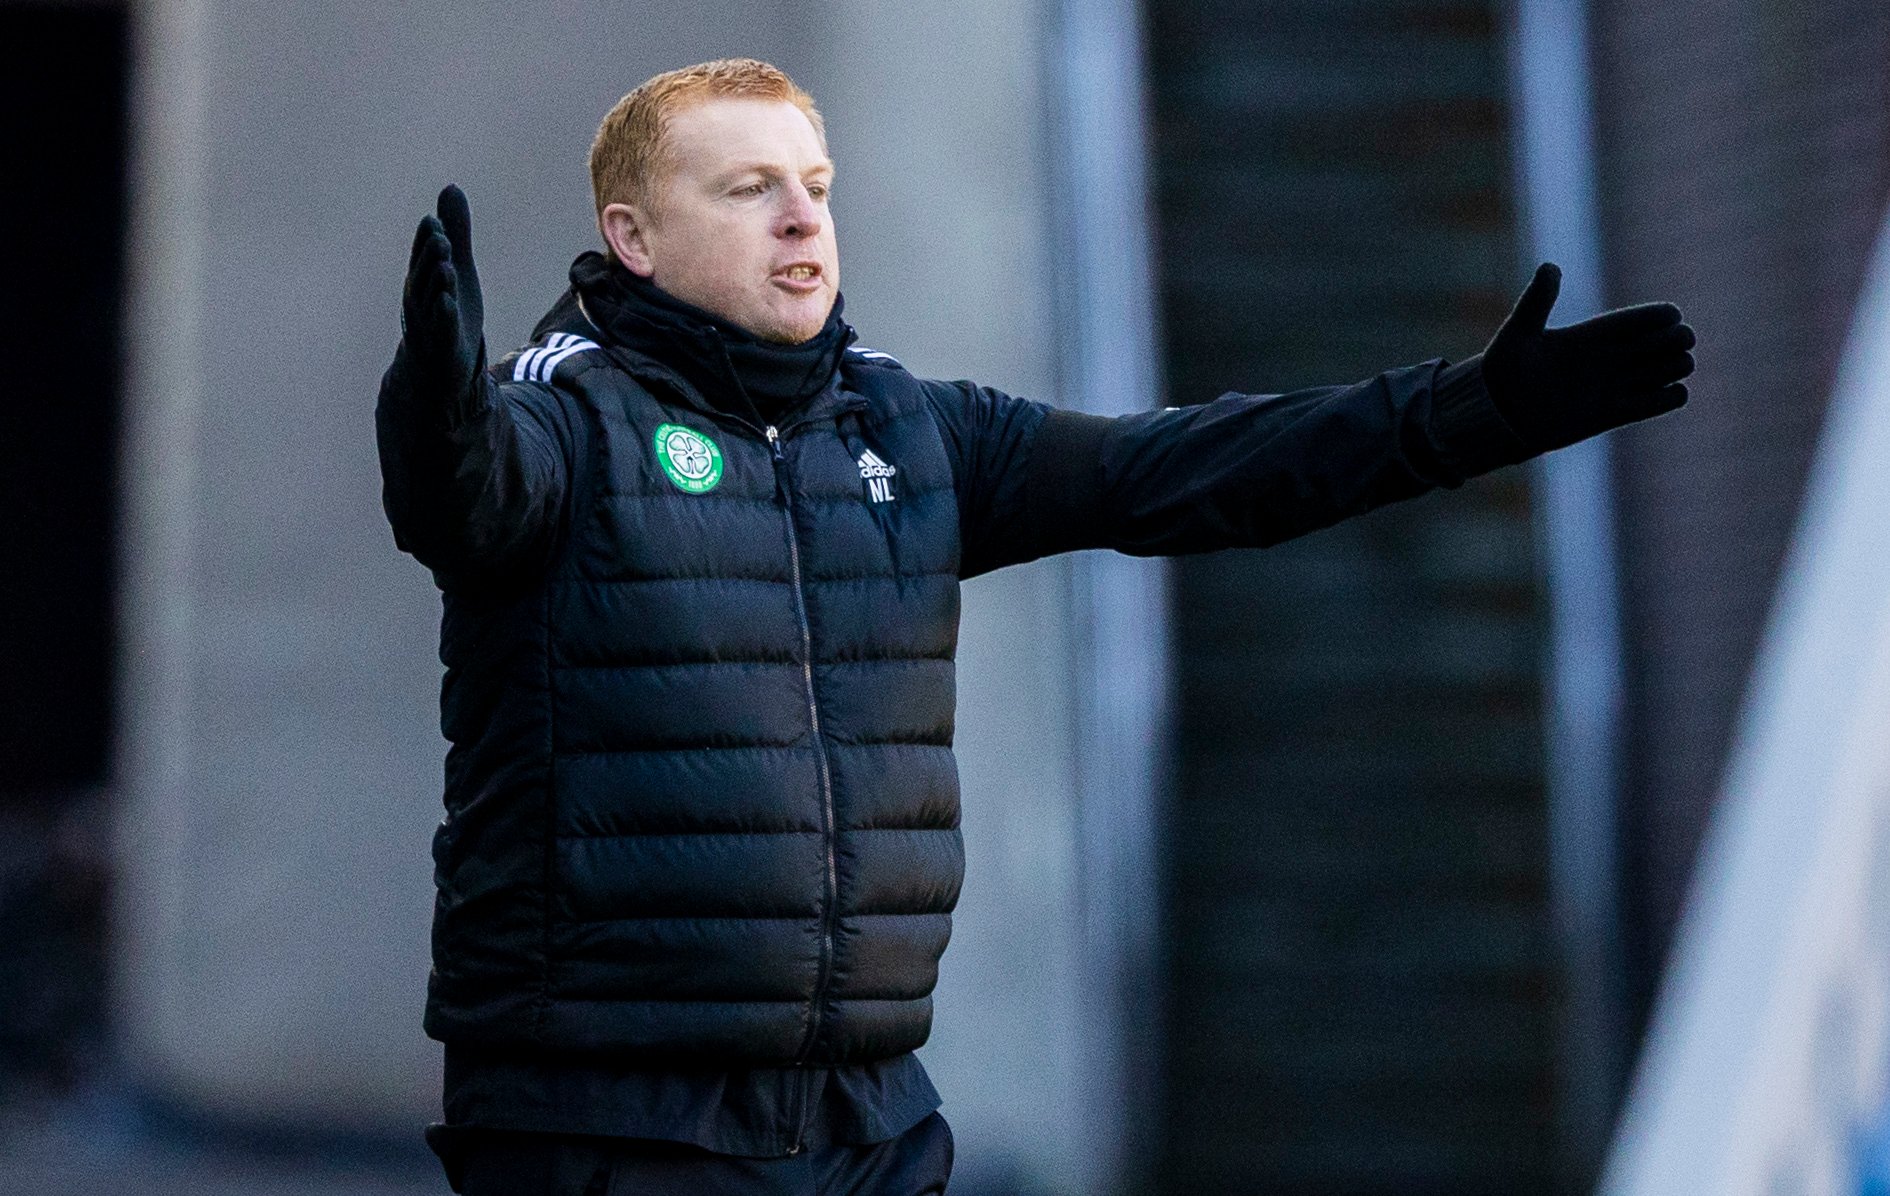 Celtic line-up v Livingston confirmed: Barkas starts, Eddy out, TV details, fans react